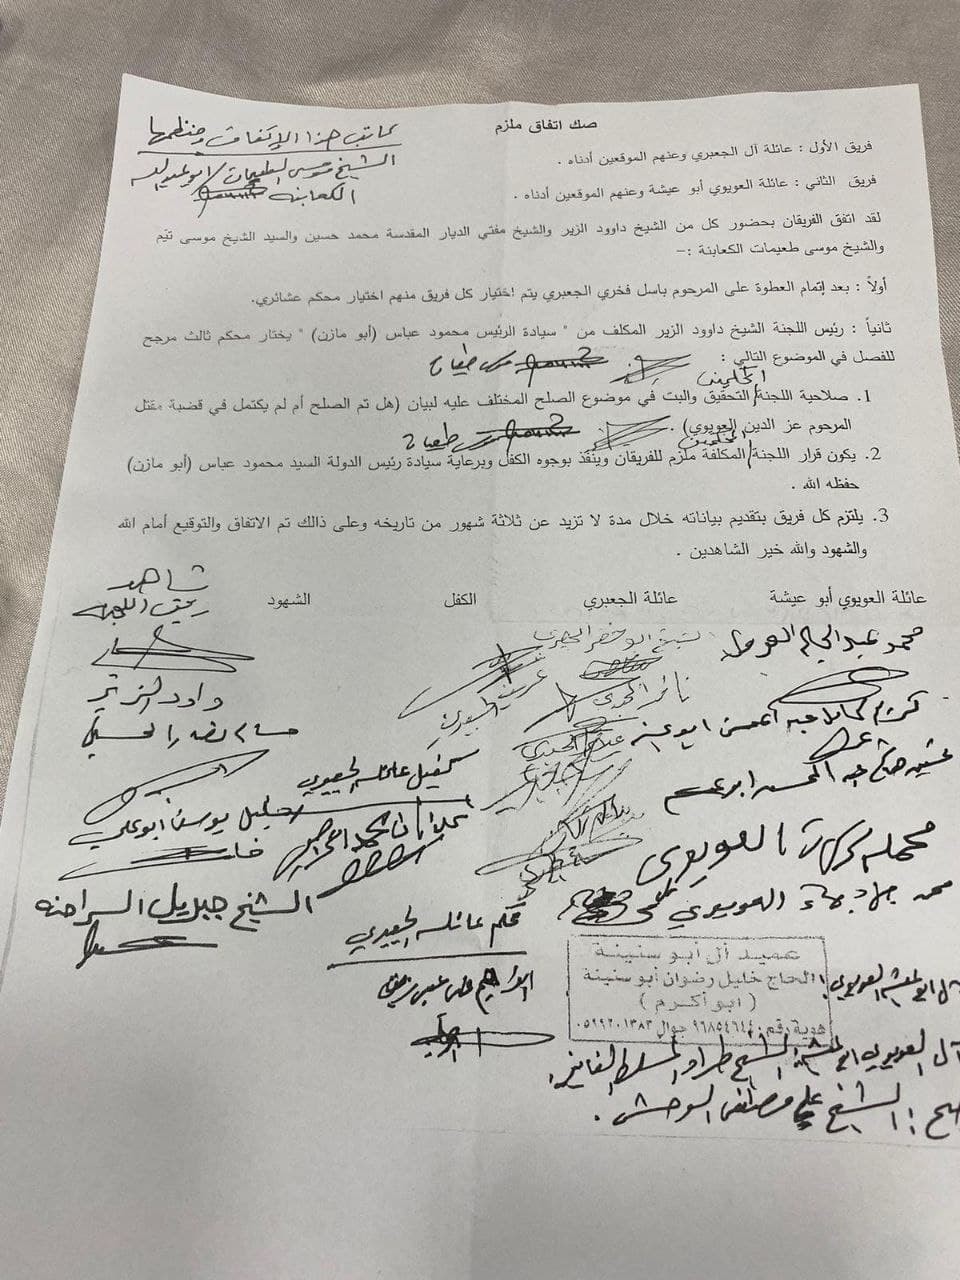 الإعلان عن اتفاق نهائي يُنهي الخلاف بين عائلتي العويوي والجعبري في الخليل